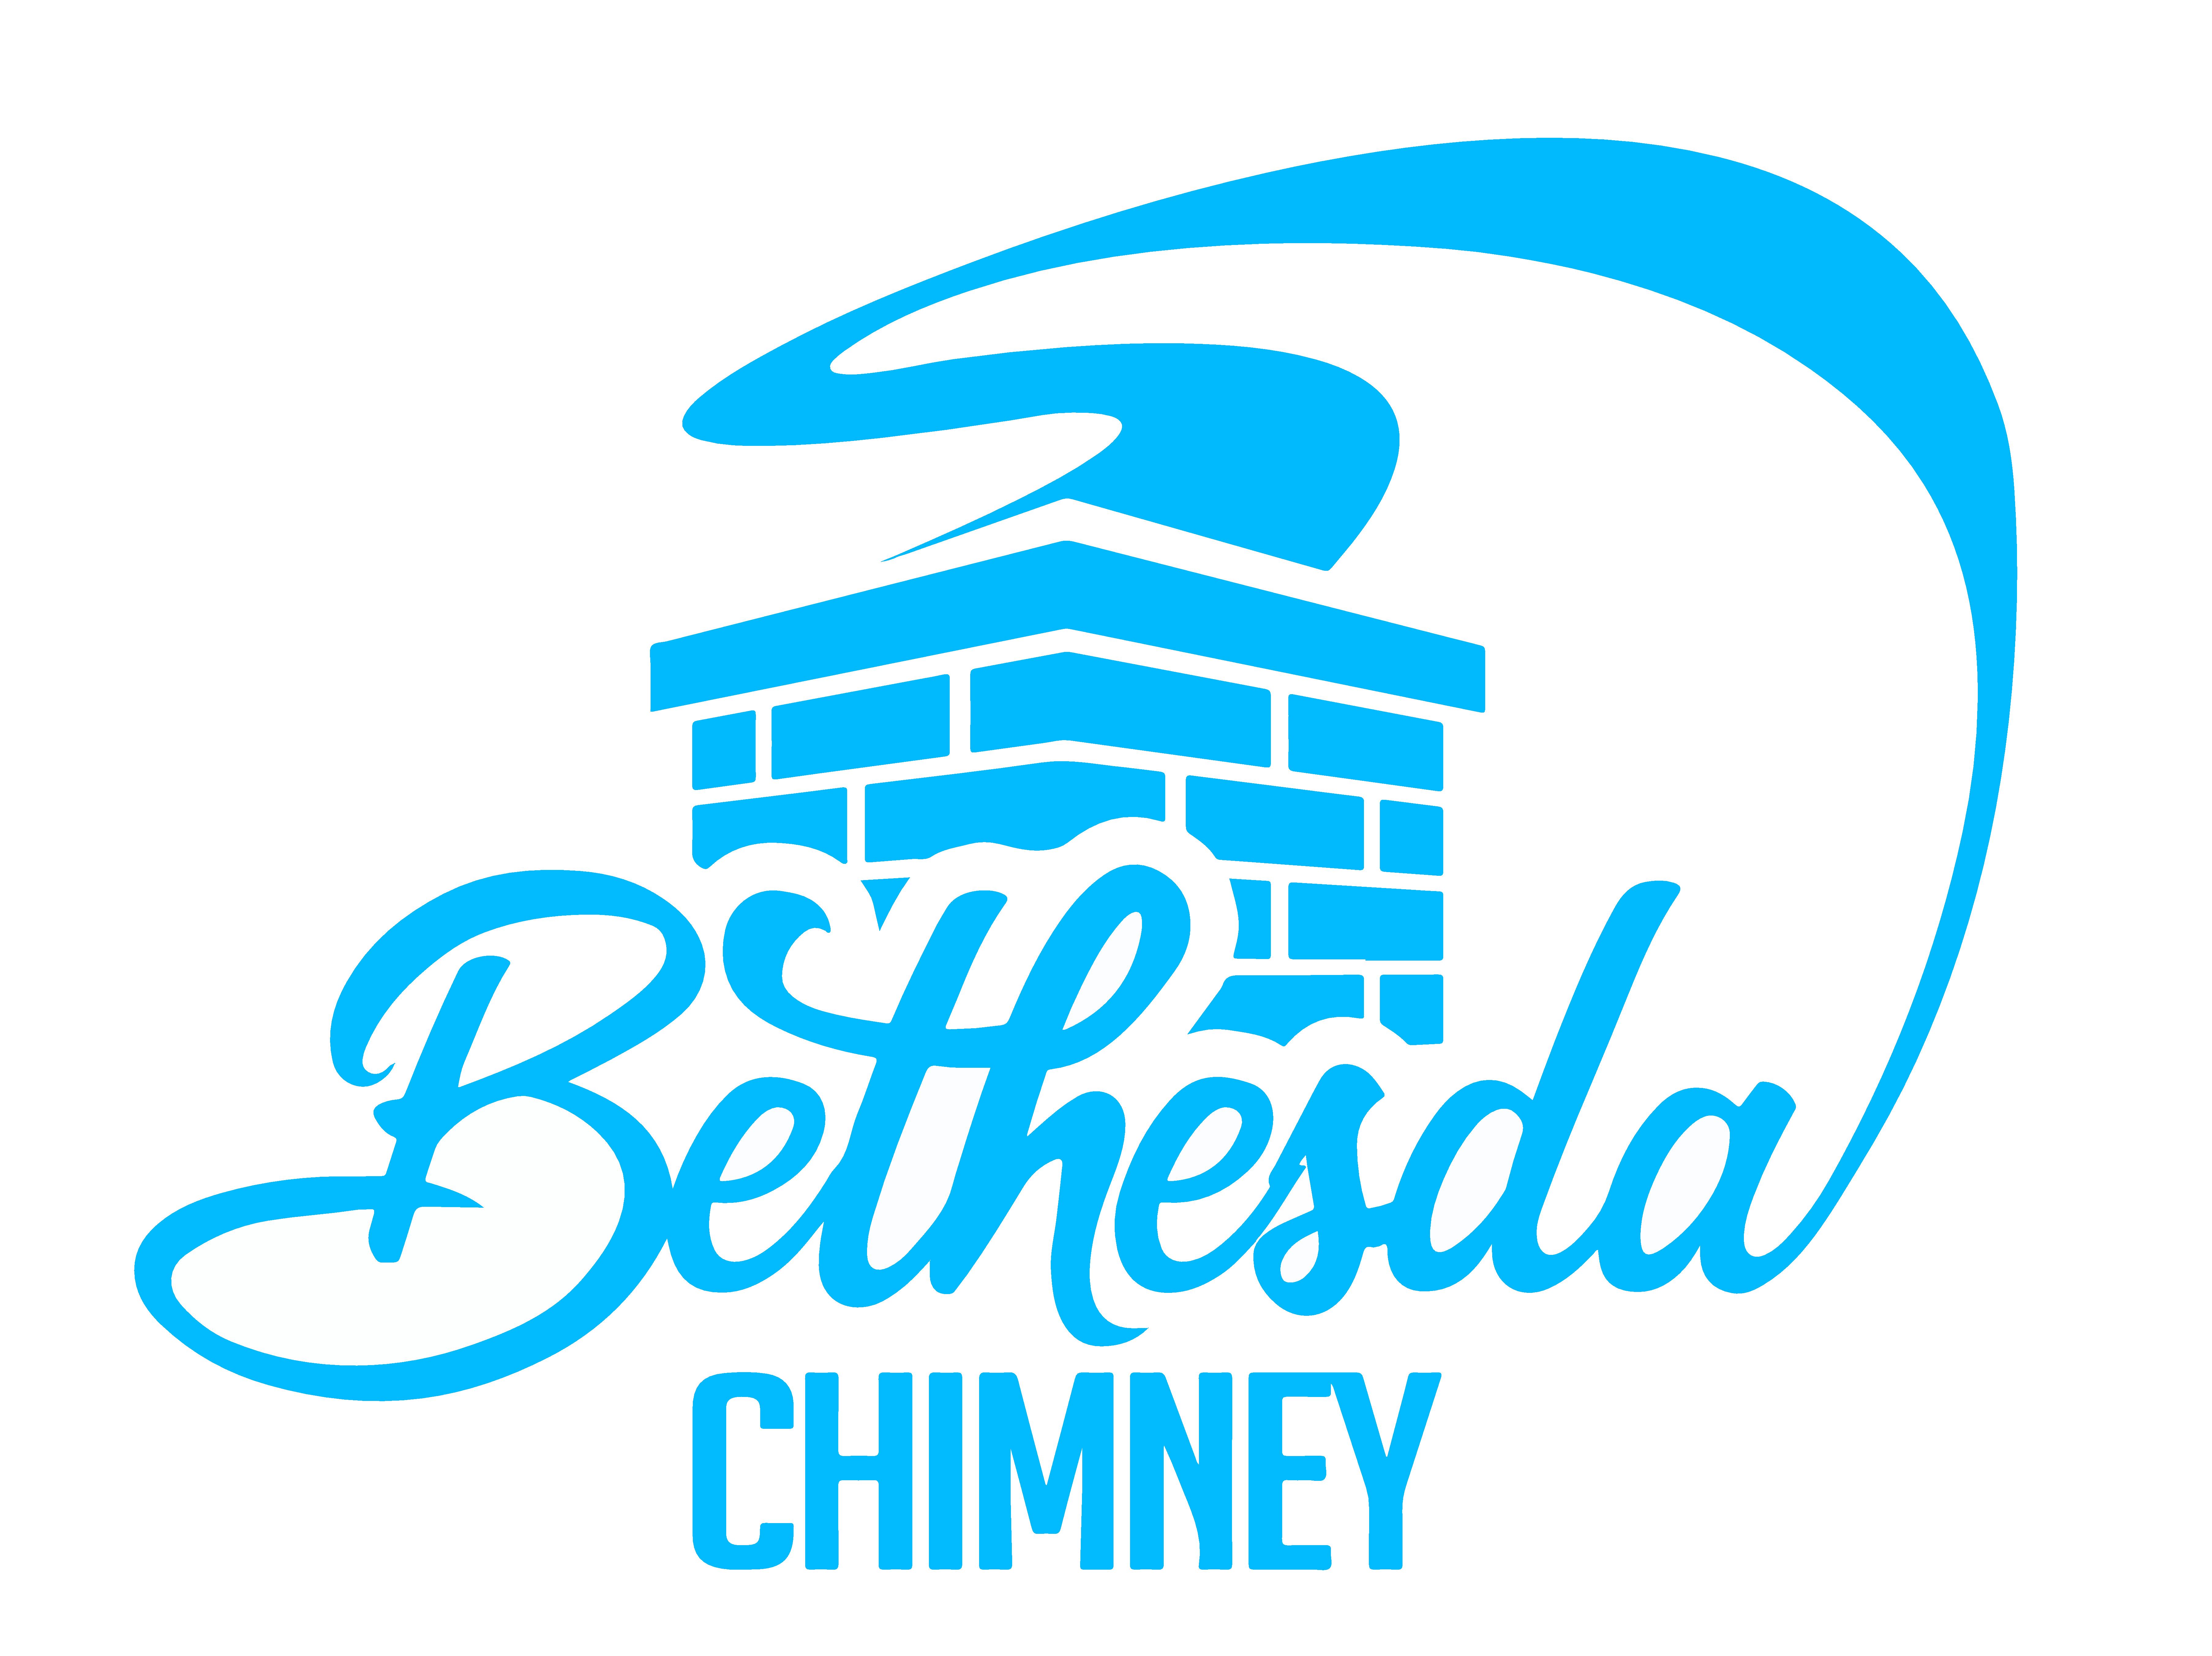 Bethesda Chimney Logo